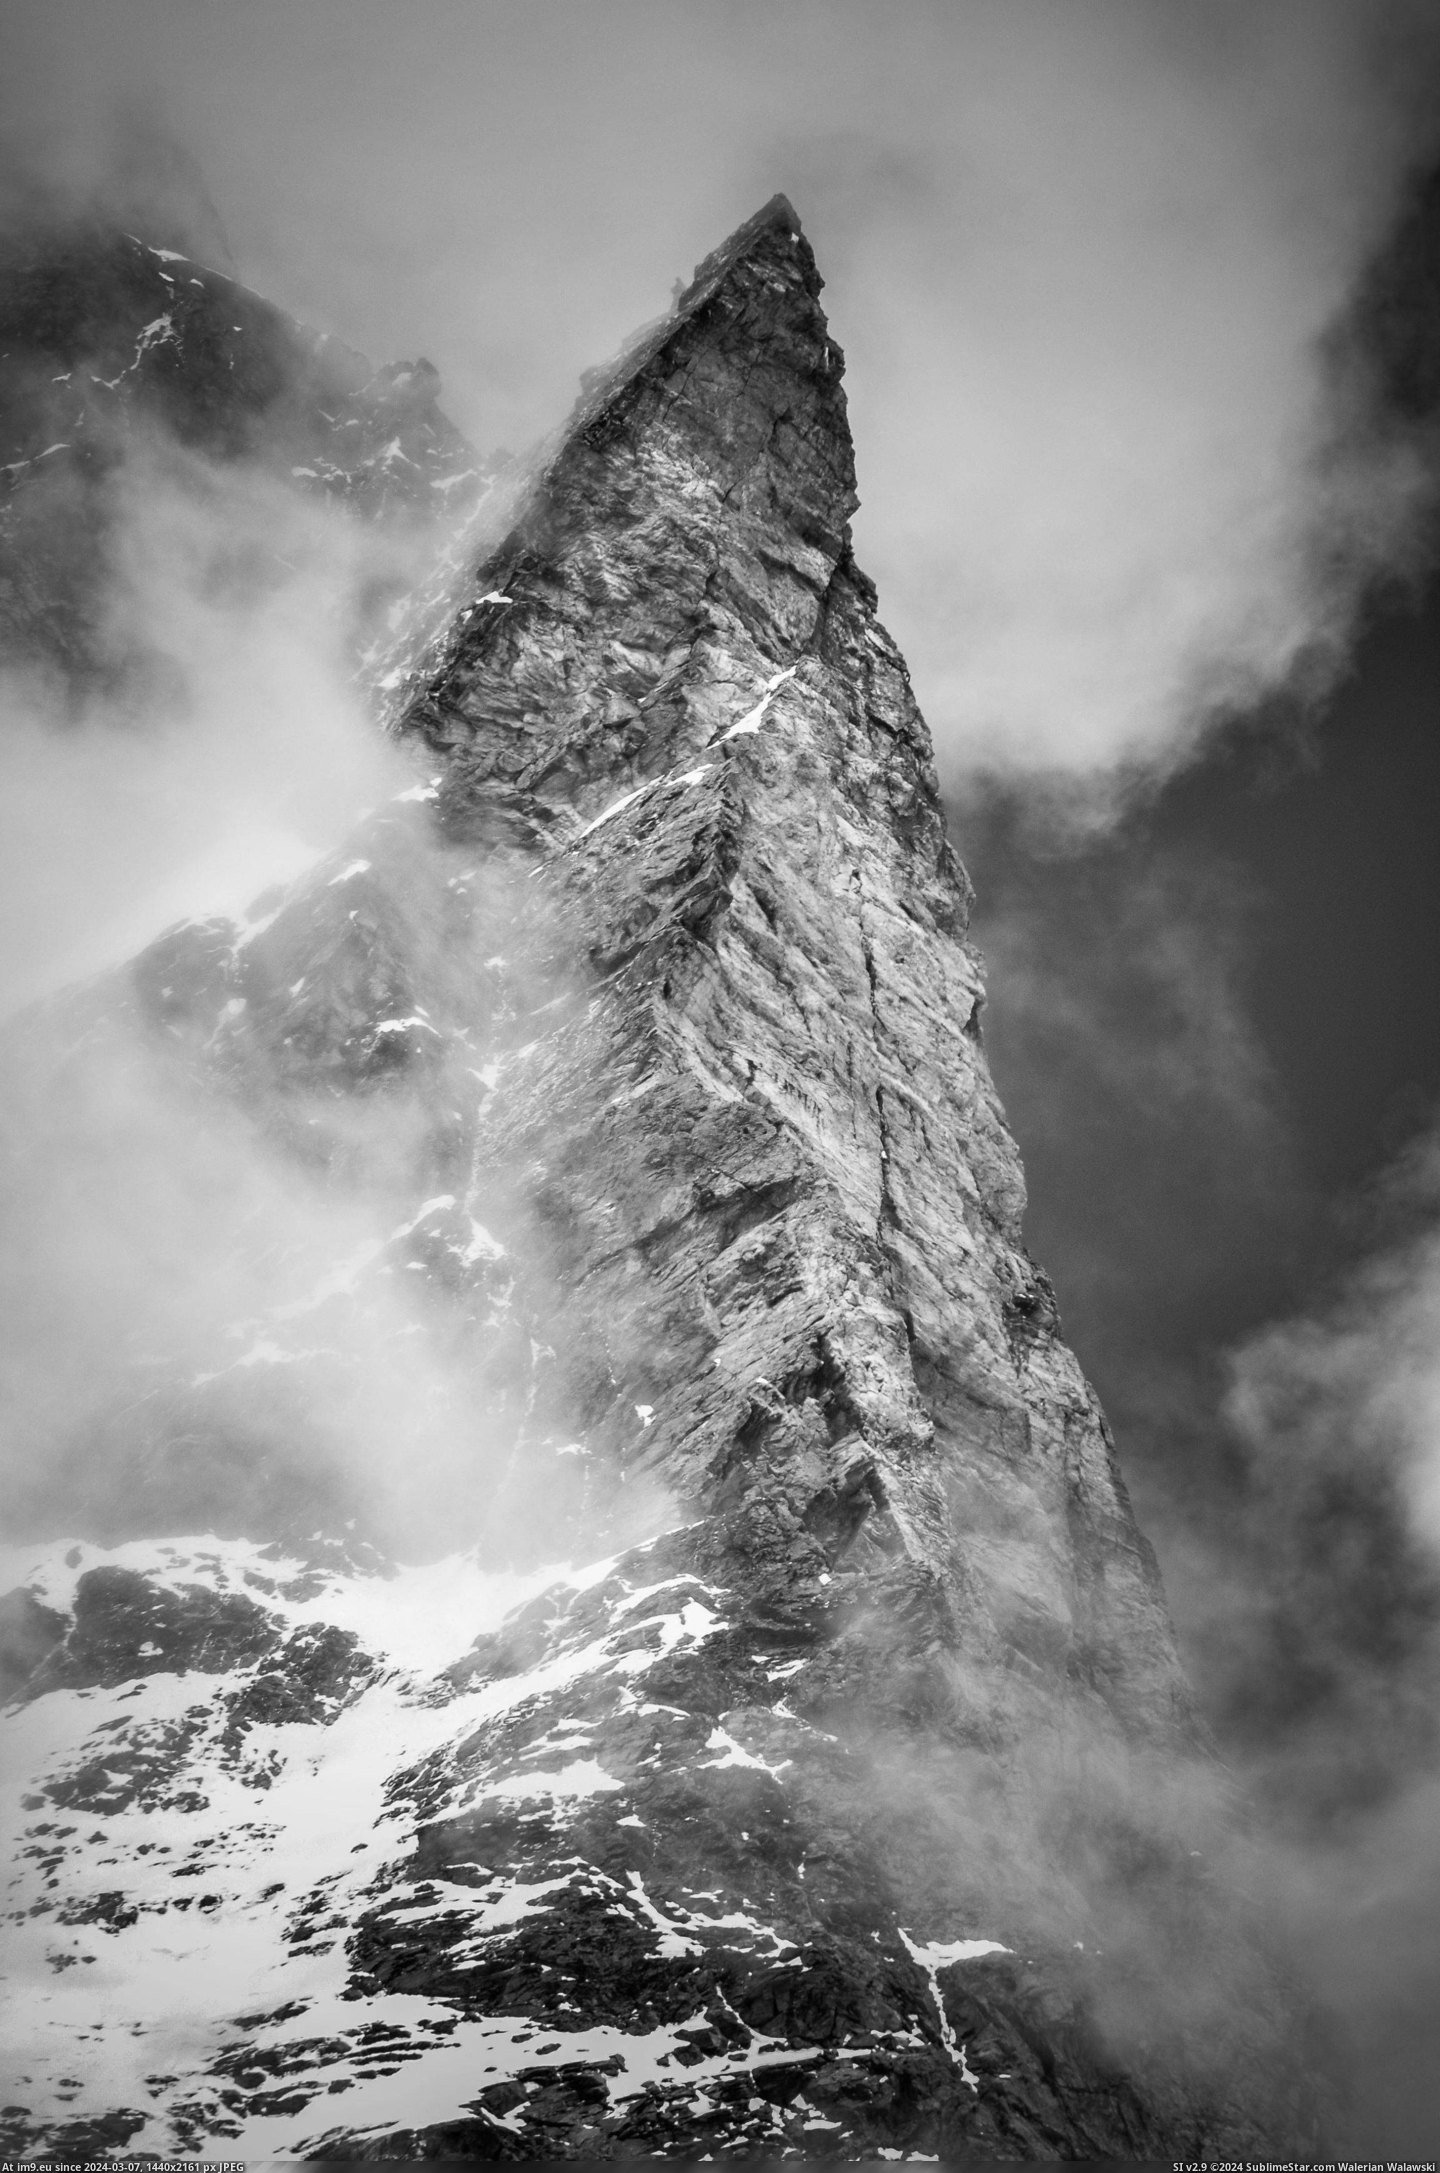  #Matterhorn  [Pics] The Matterhorn Pic. (Image of album My r/PICS favs))